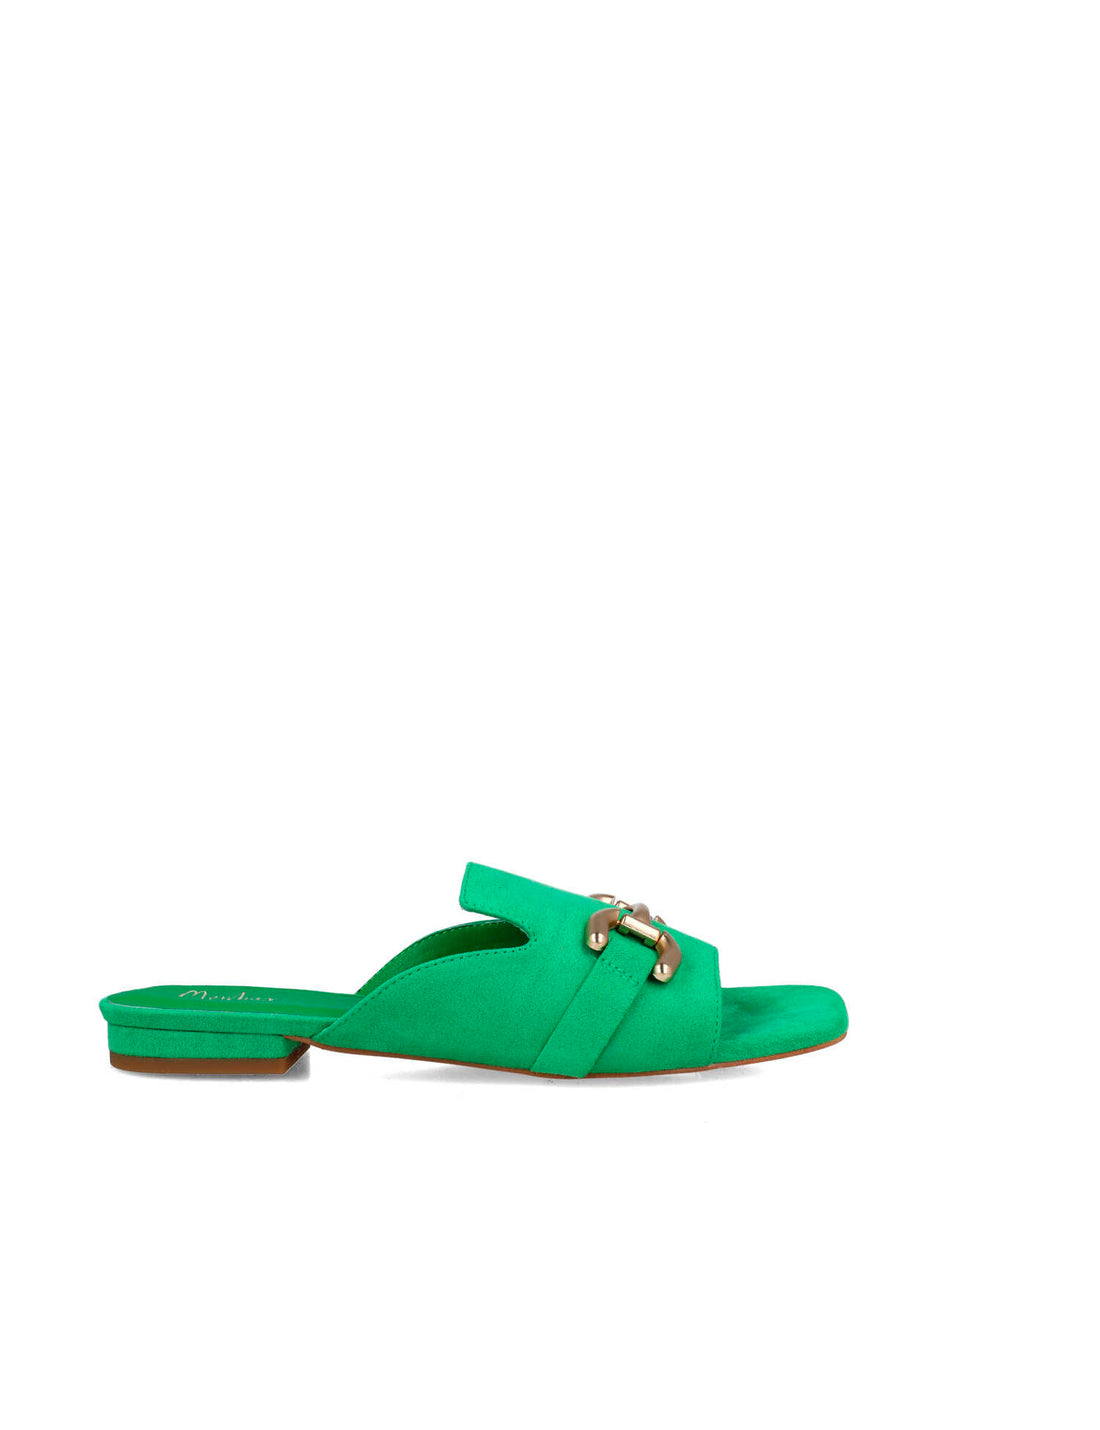 Green Open-Toe Mule Slippers_25569_64_01